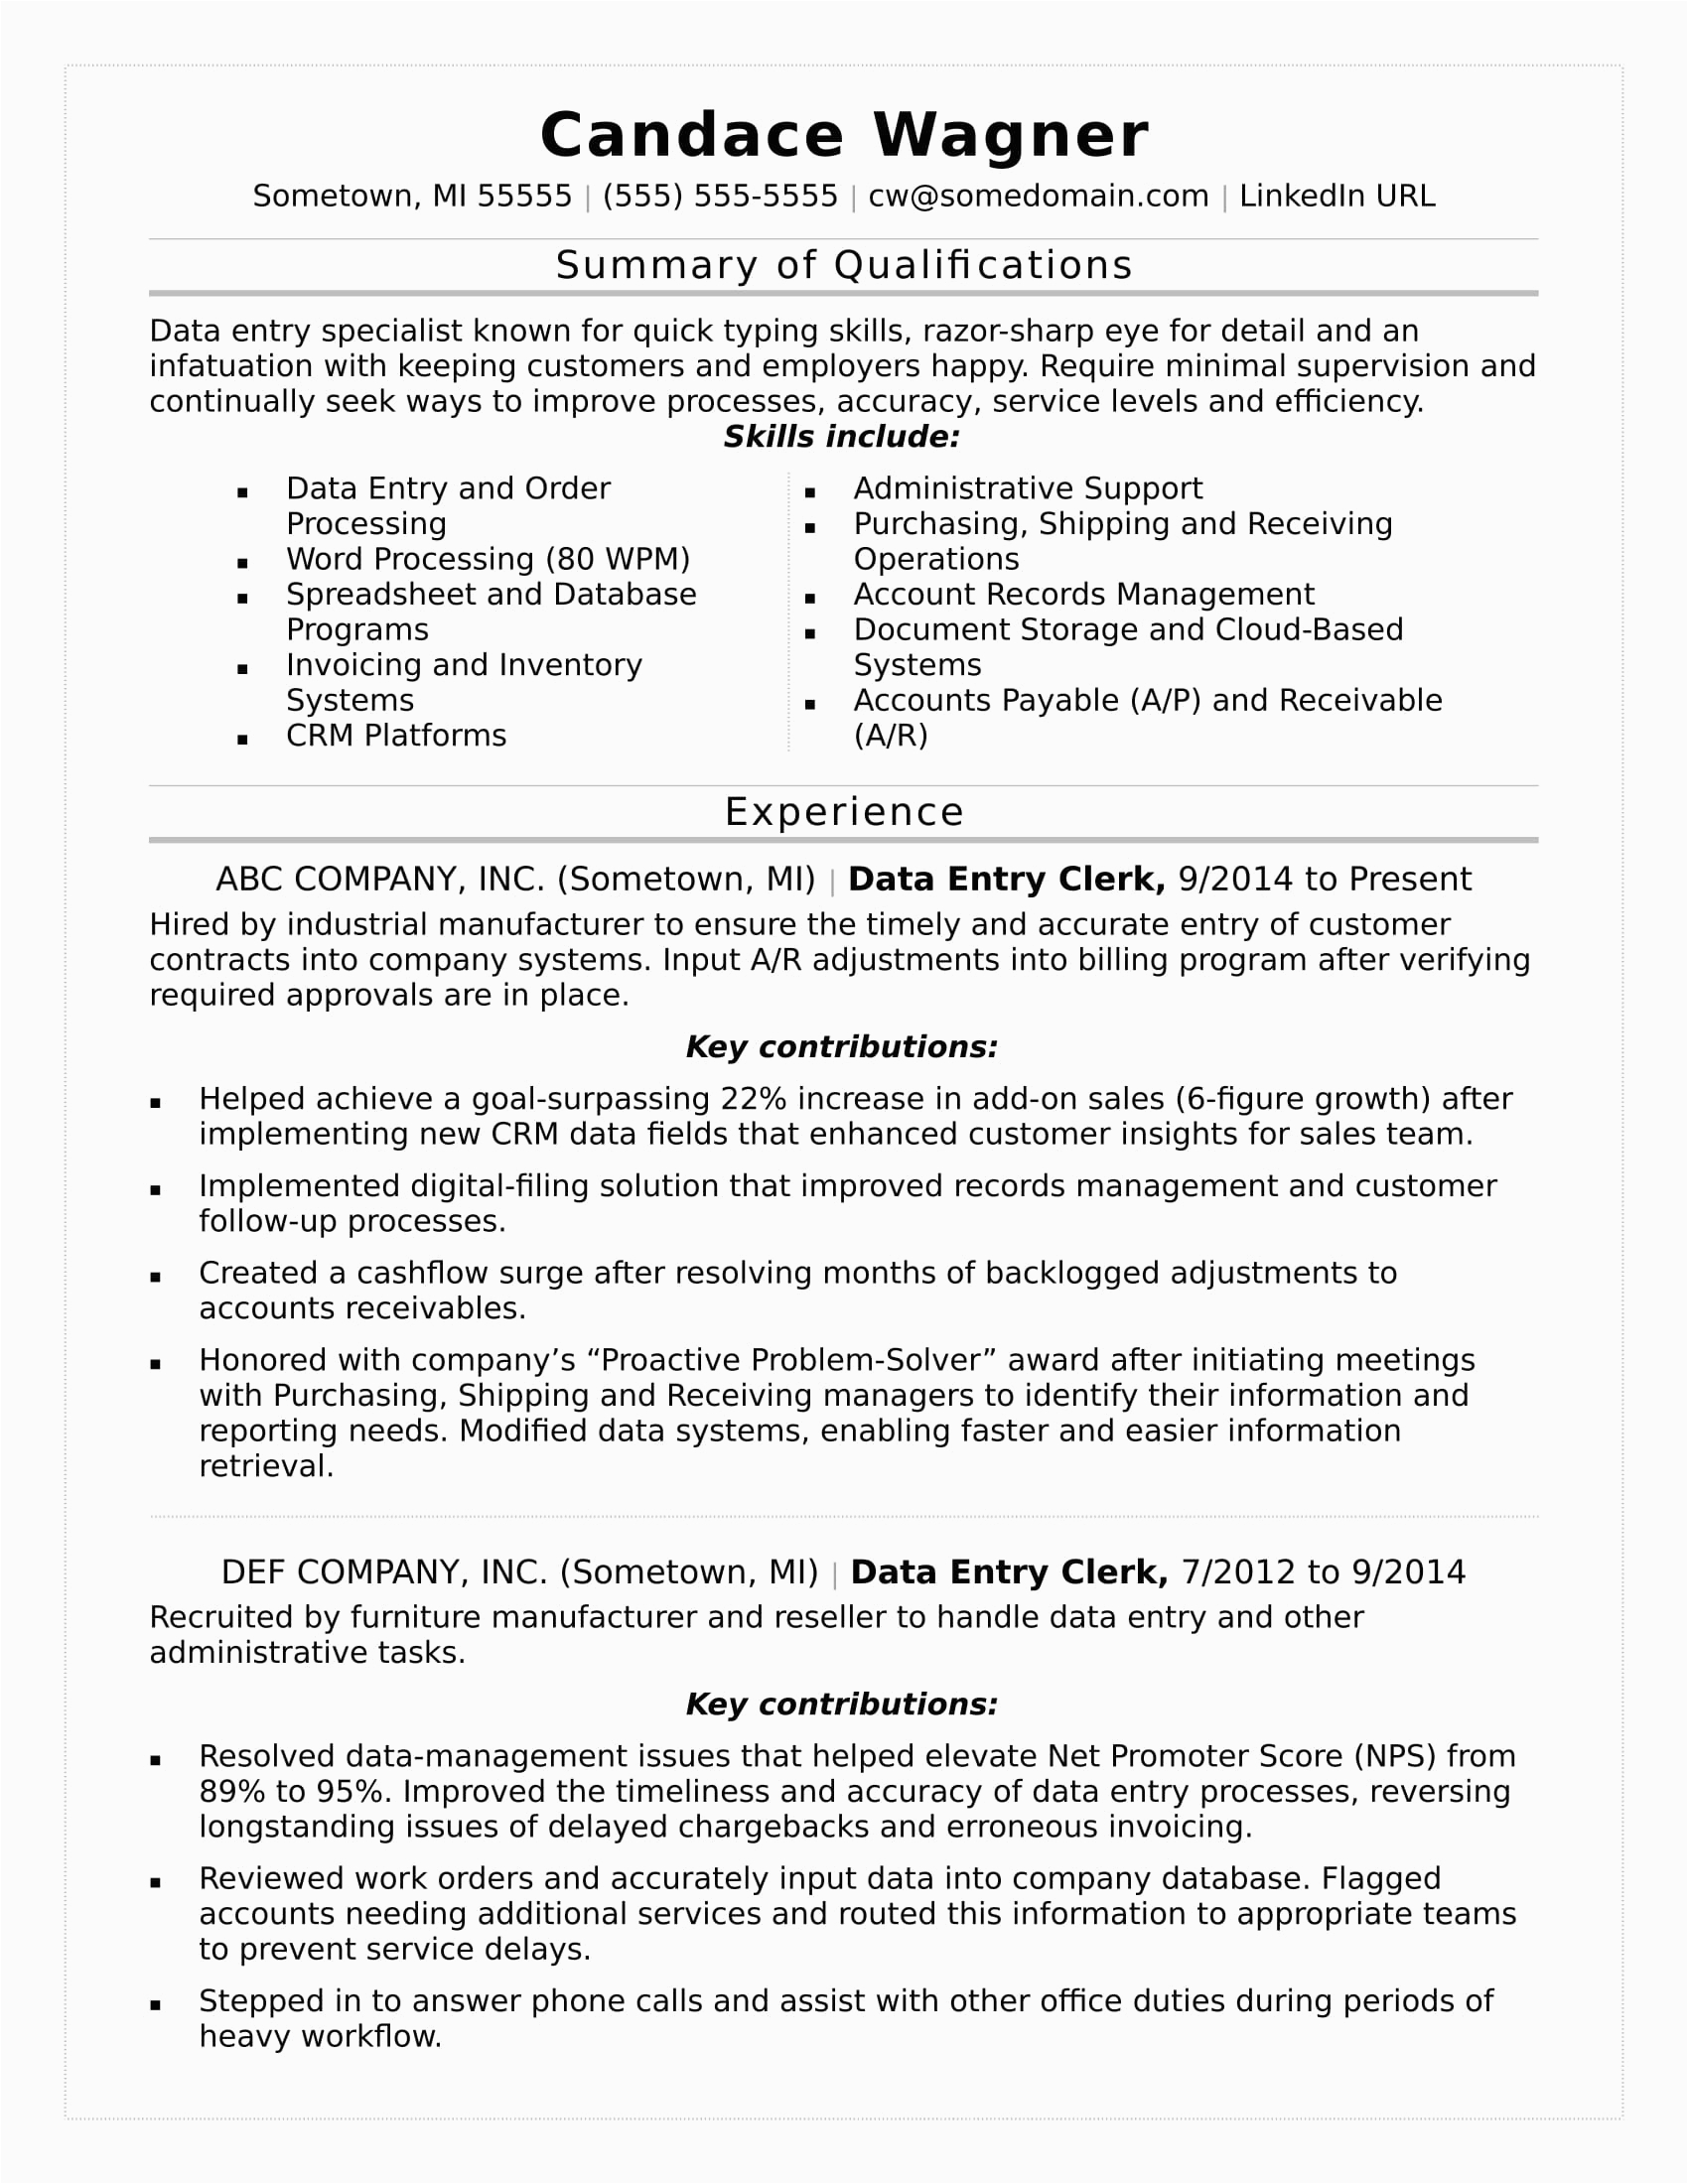 Resume for Data Entry Position Sample Data Entry Resume